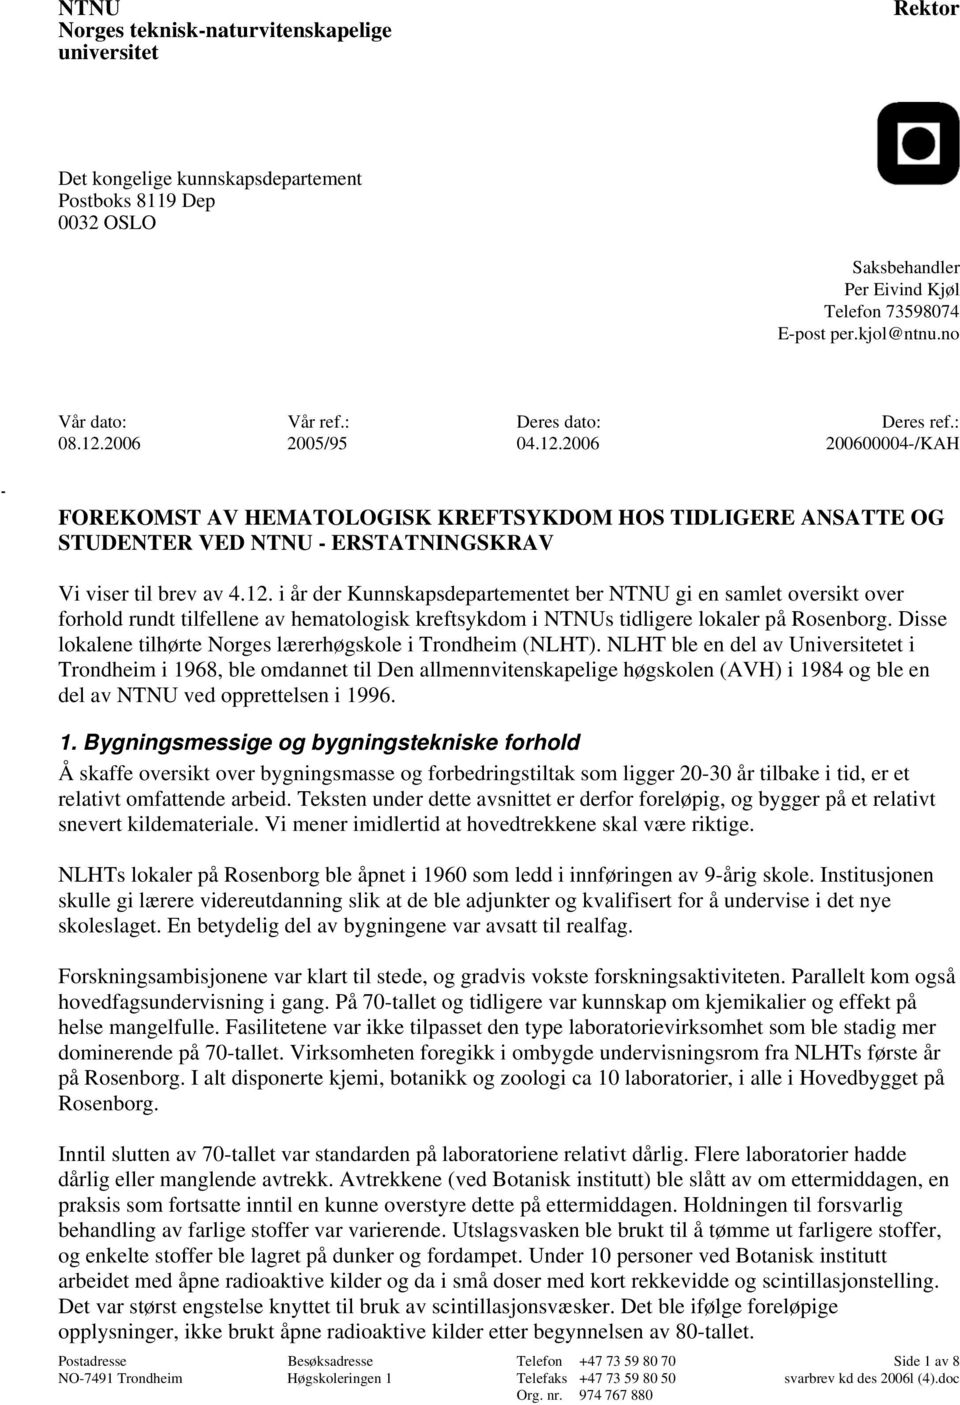 12. i år der Kunnskapsdepartementet ber NTNU gi en samlet oversikt over forhold rundt tilfellene av hematologisk kreftsykdom i NTNUs tidligere lokaler på Rosenborg.